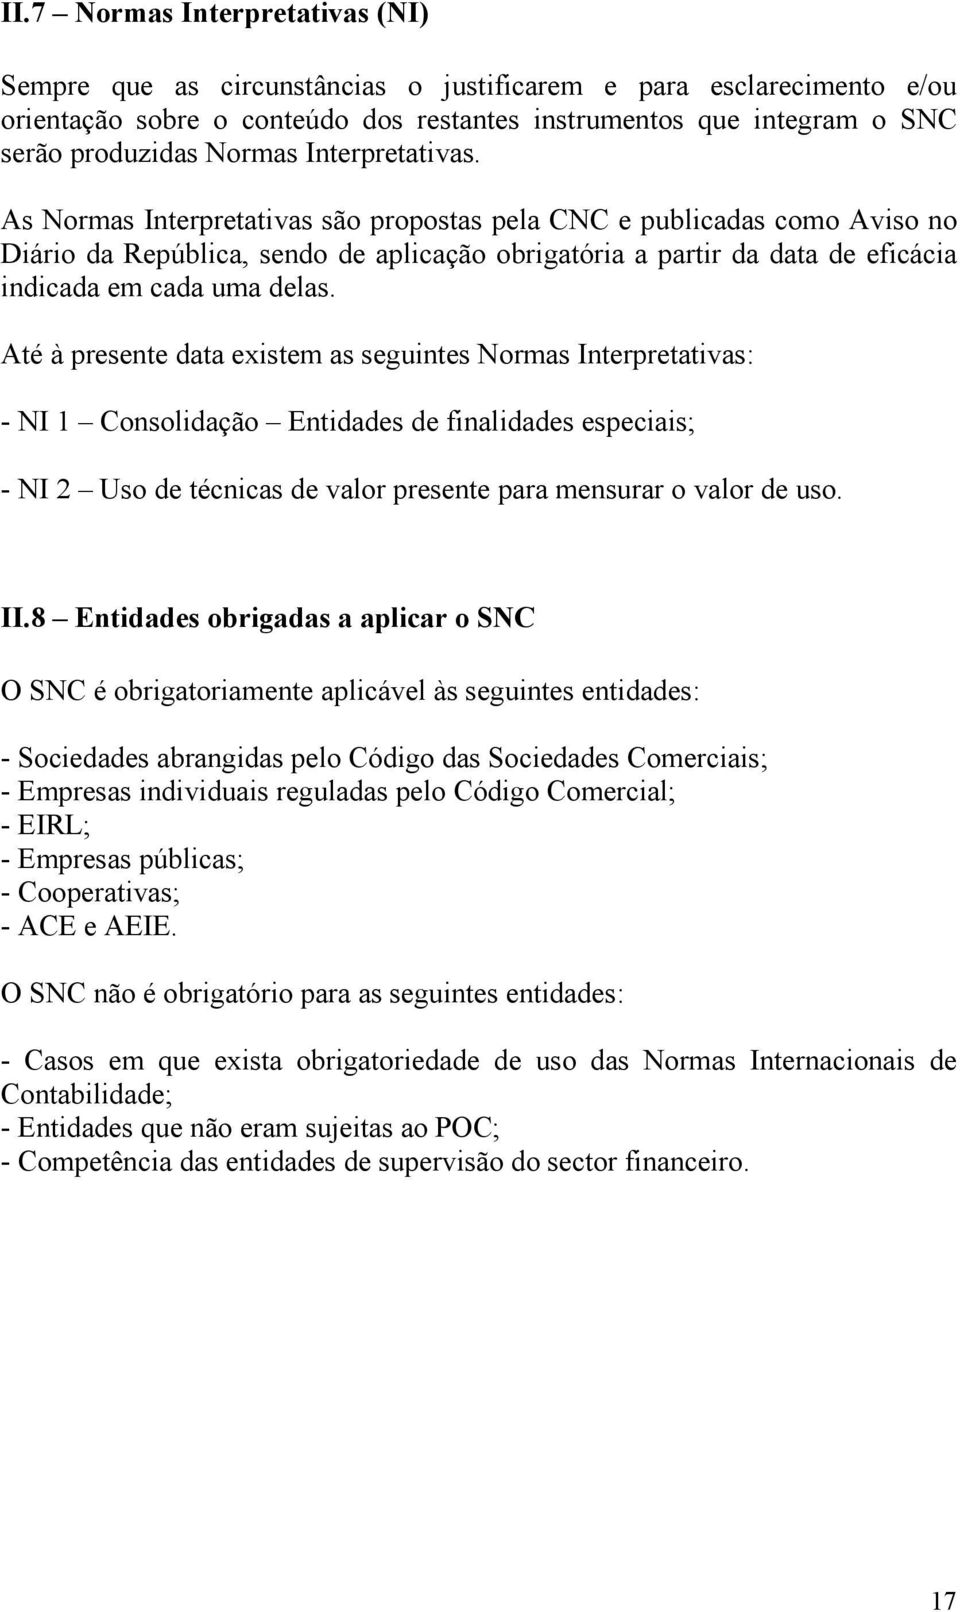 As Normas Interpretativas são propostas pela CNC e publicadas como Aviso no Diário da República, sendo de aplicação obrigatória a partir da data de eficácia indicada em cada uma delas.